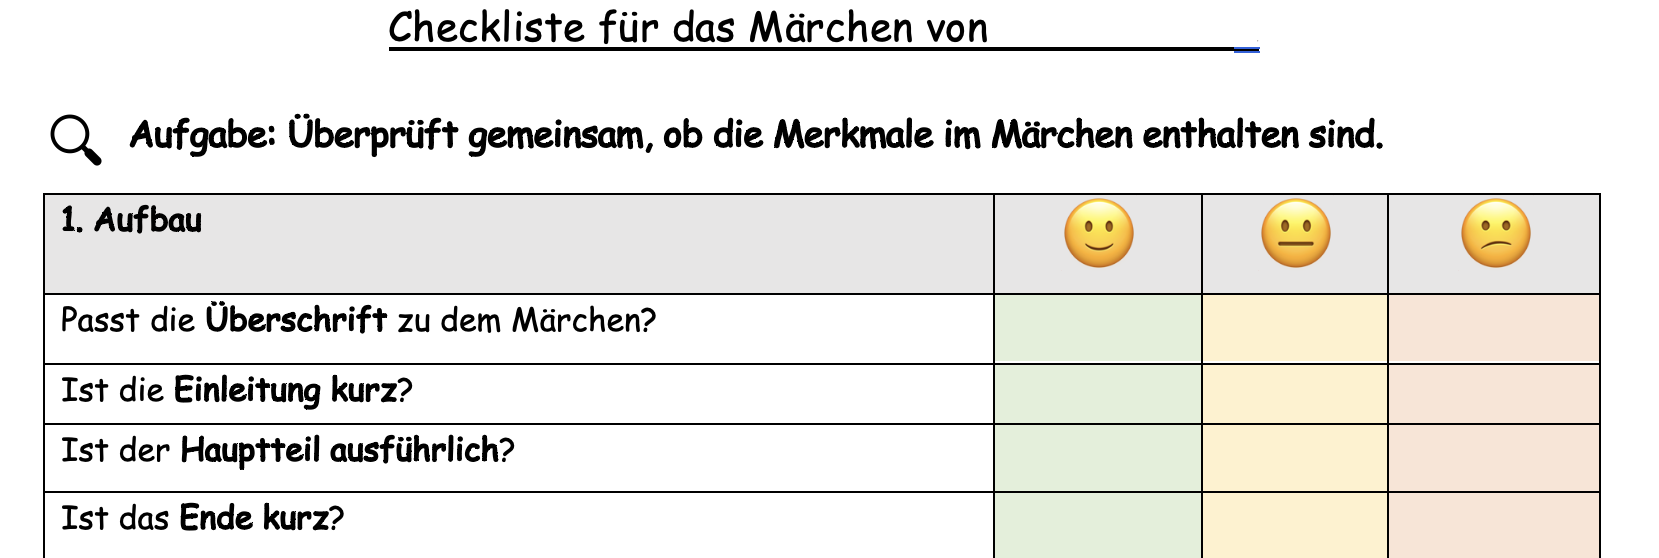 Checkliste Märchen.png